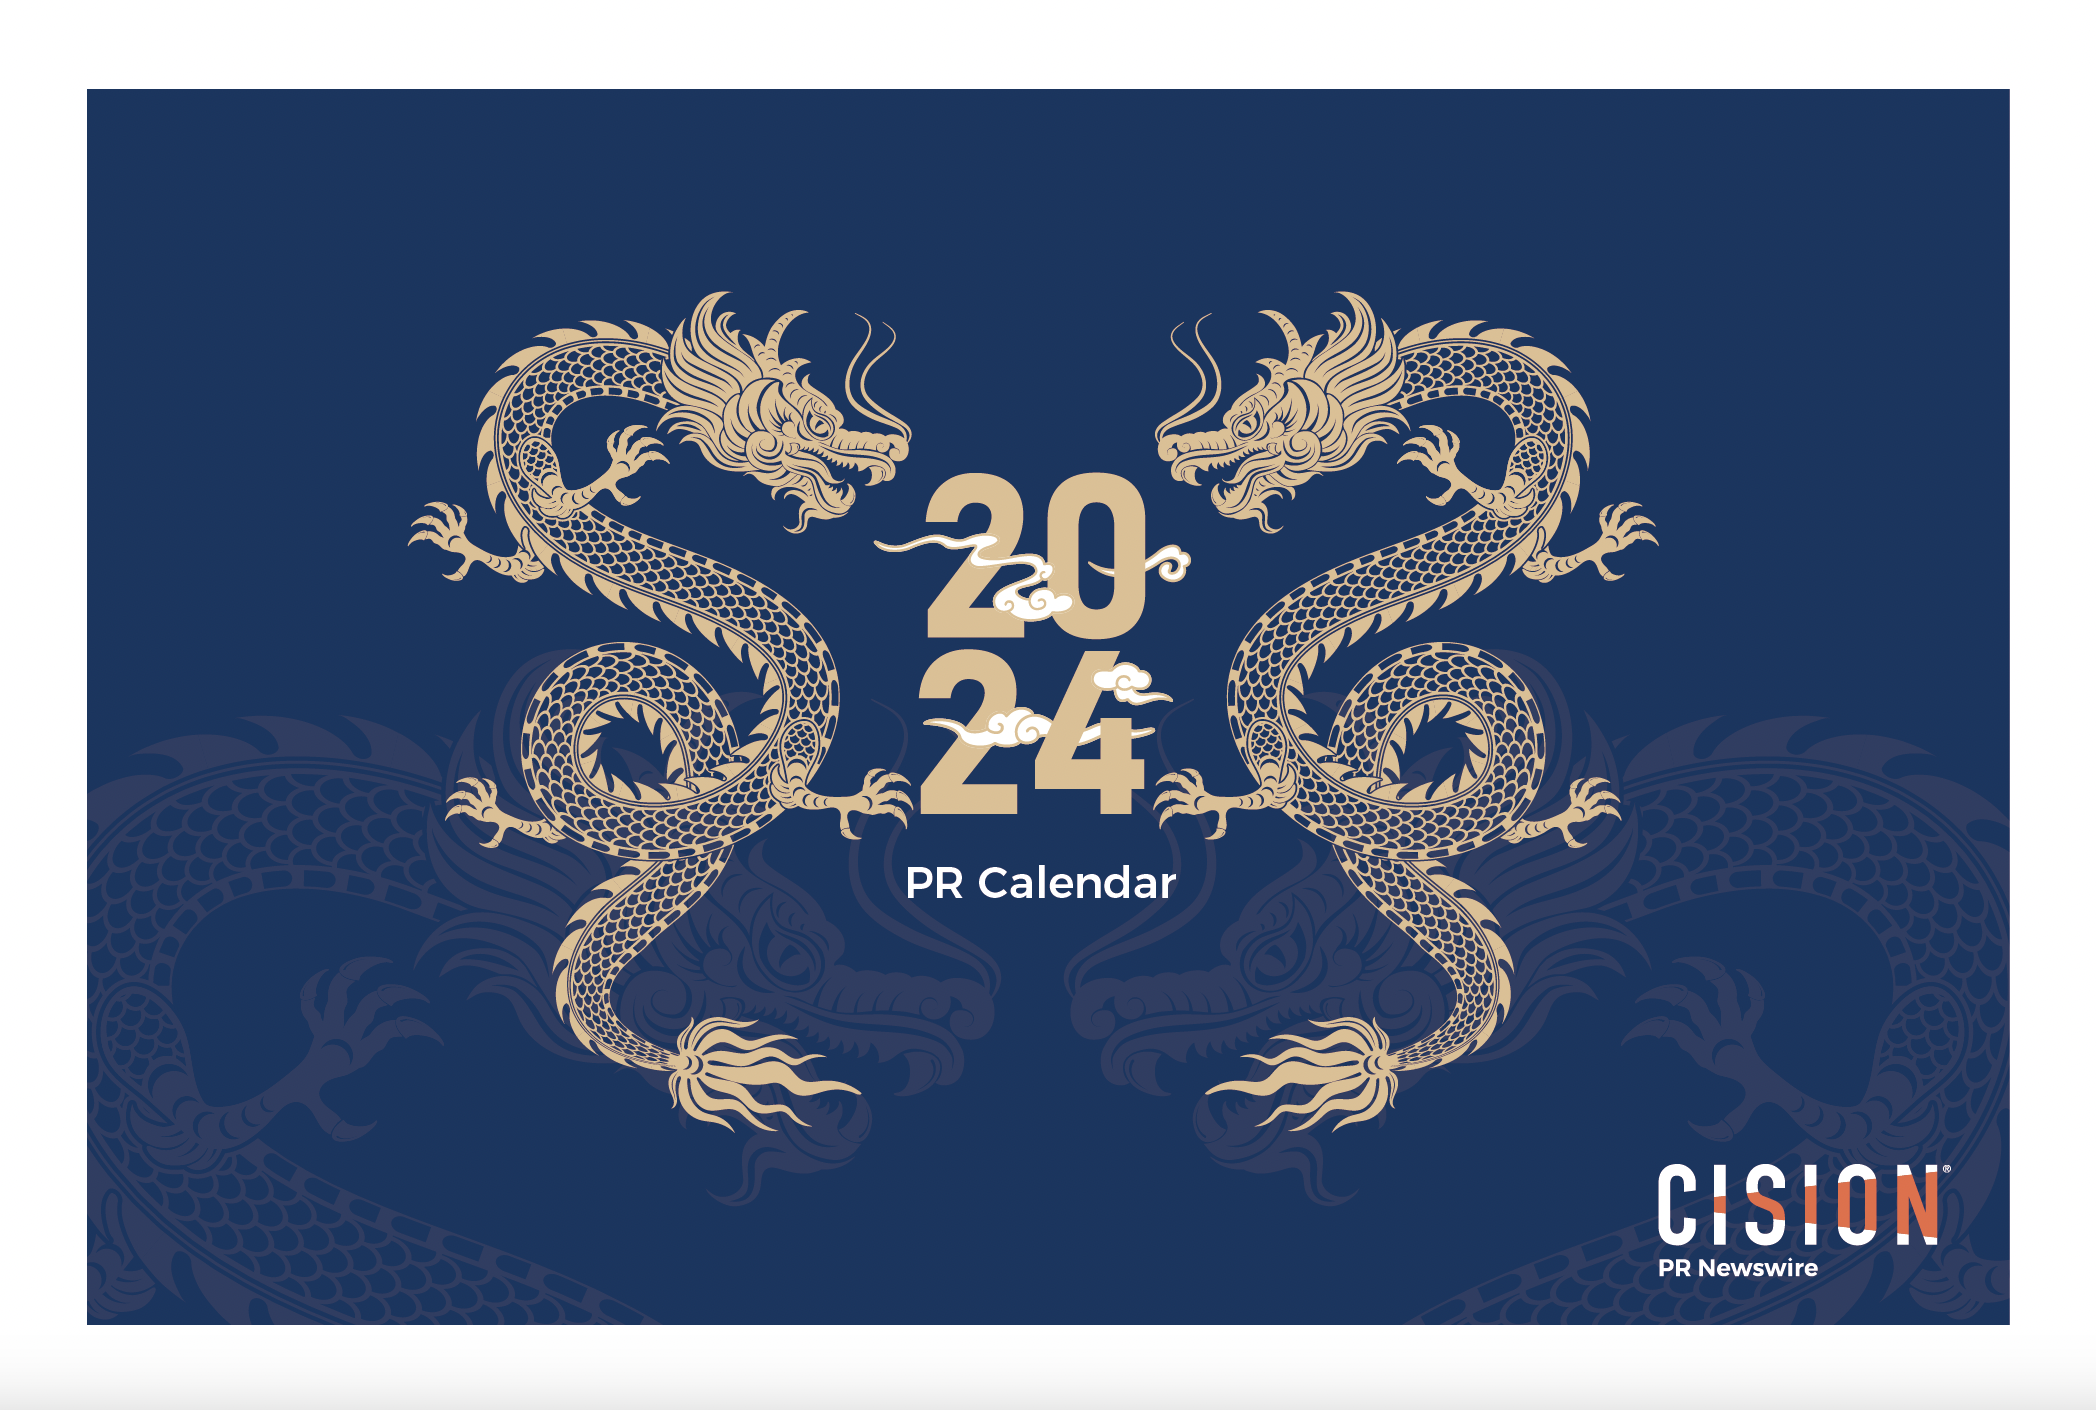 APAC PR Calendar 2024